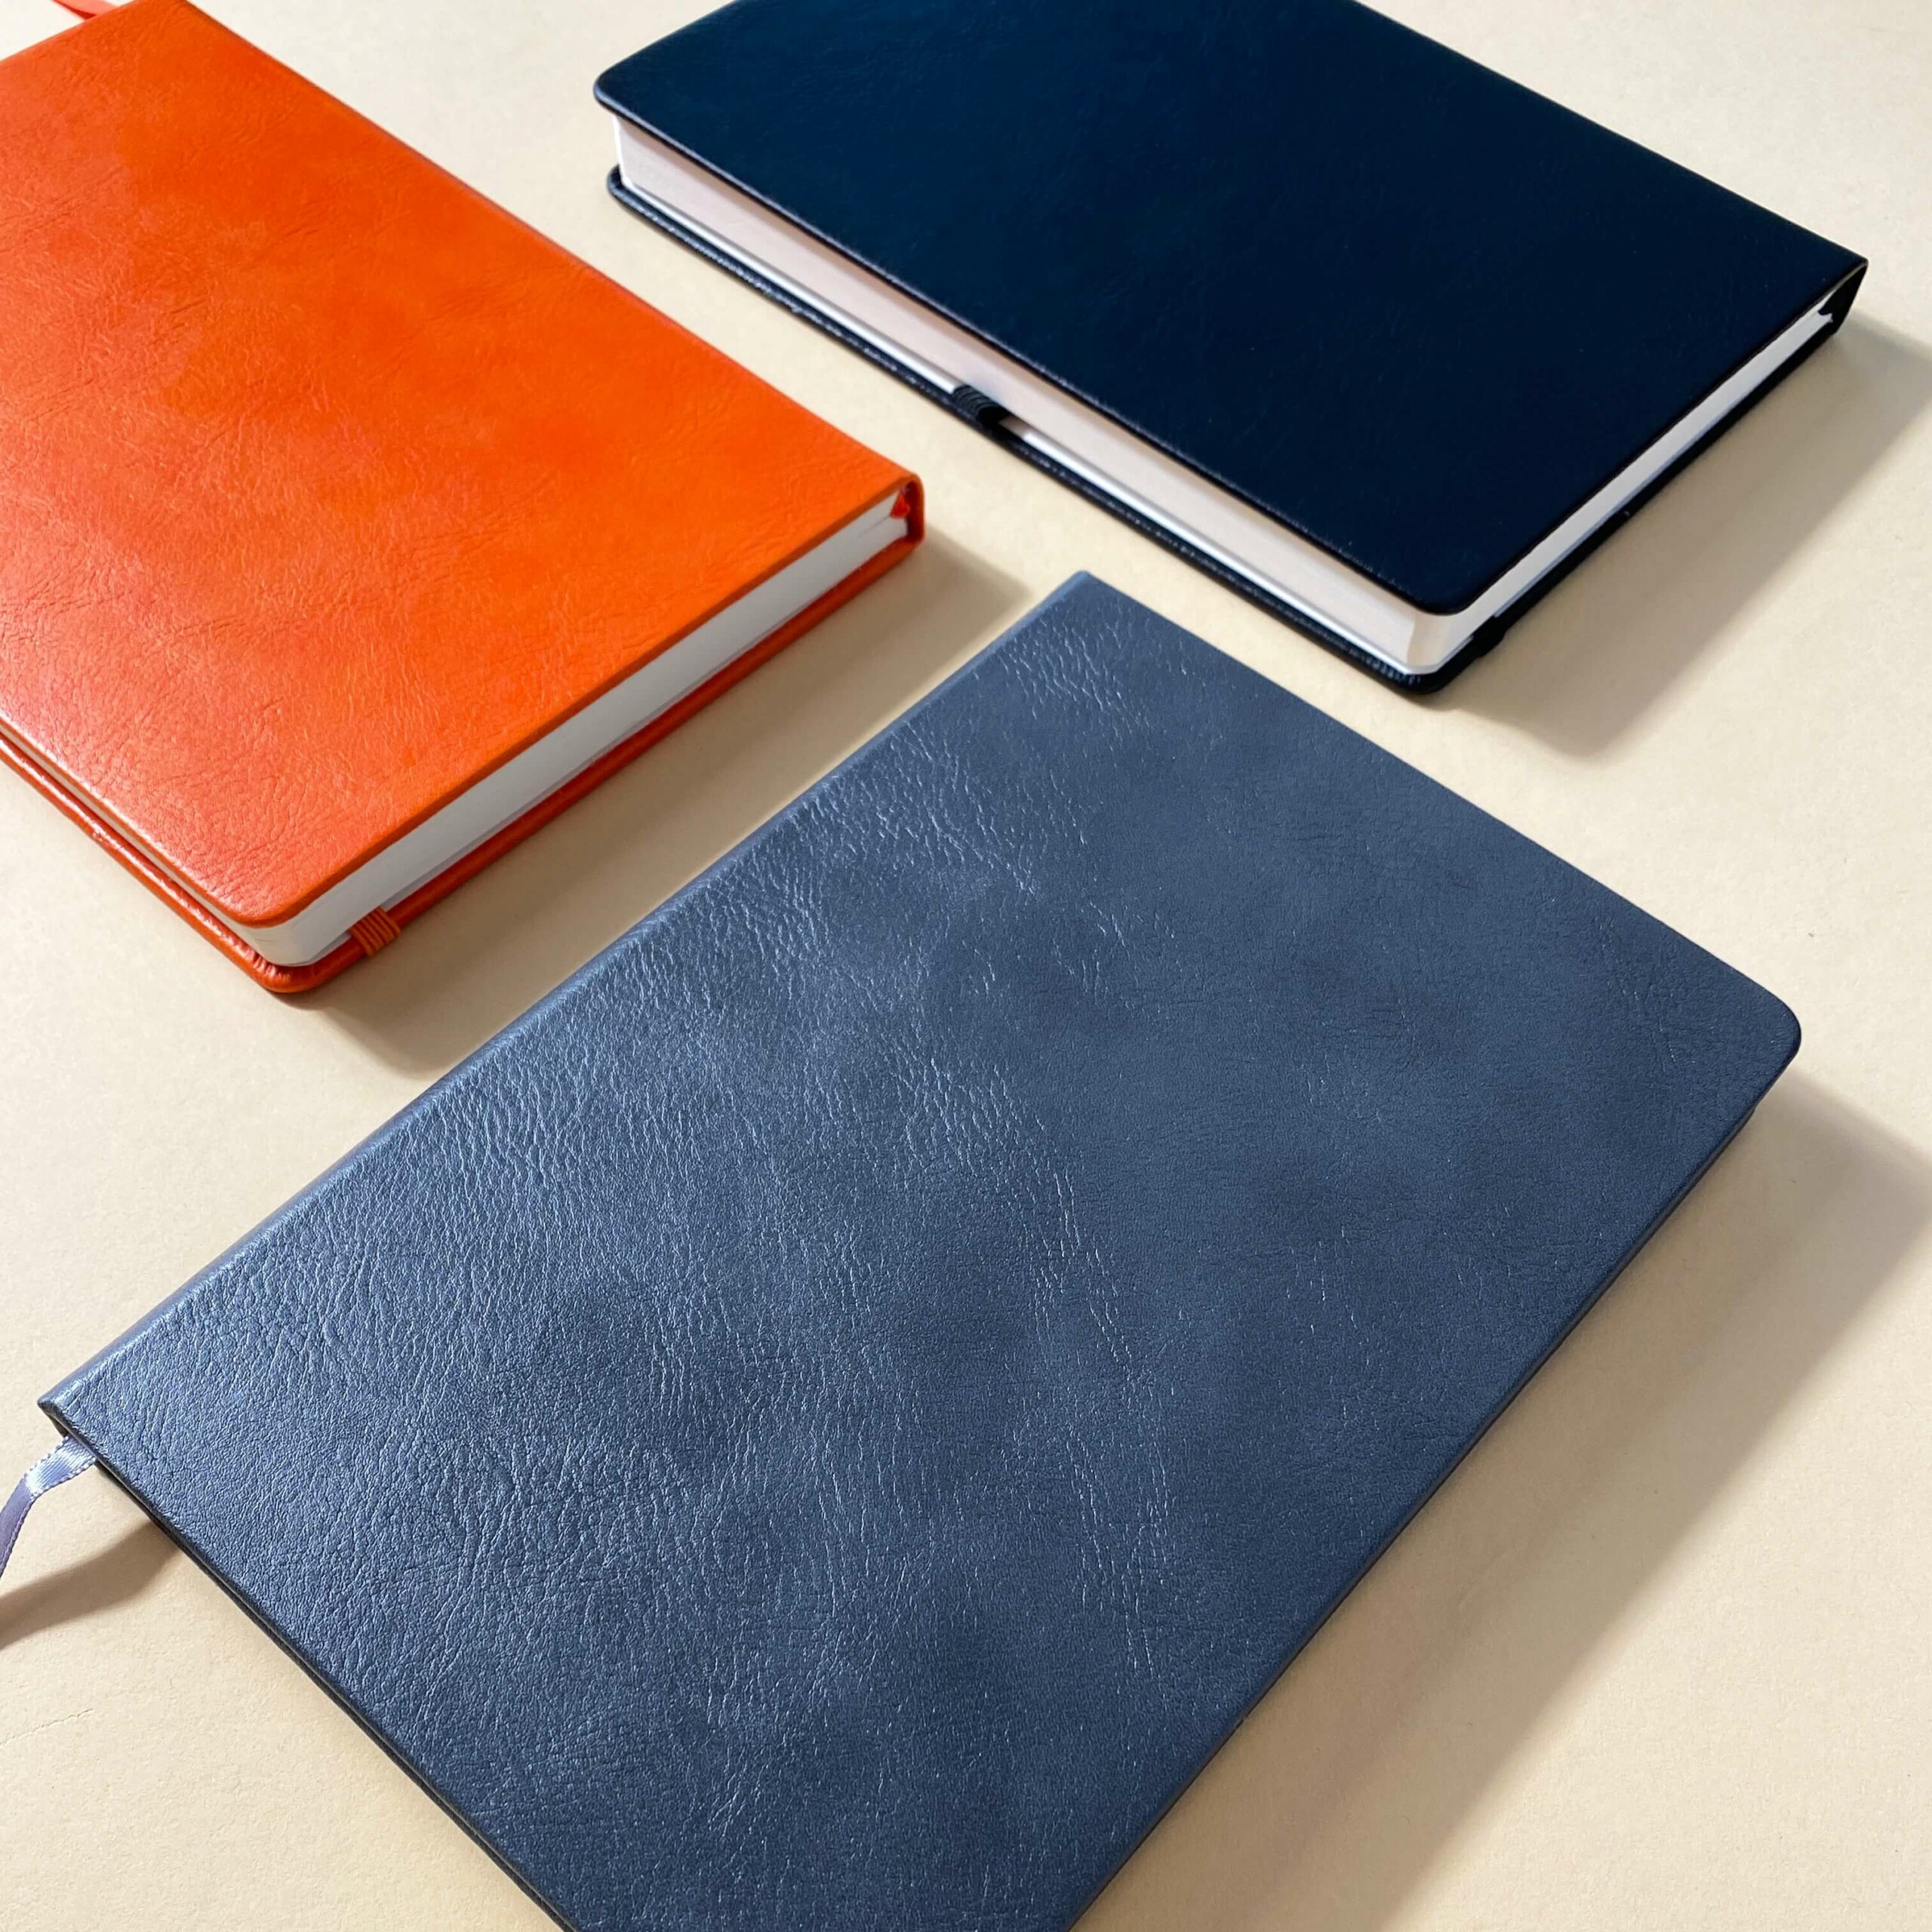 Tre anteckningsböcker i blått, orange och mörkblått